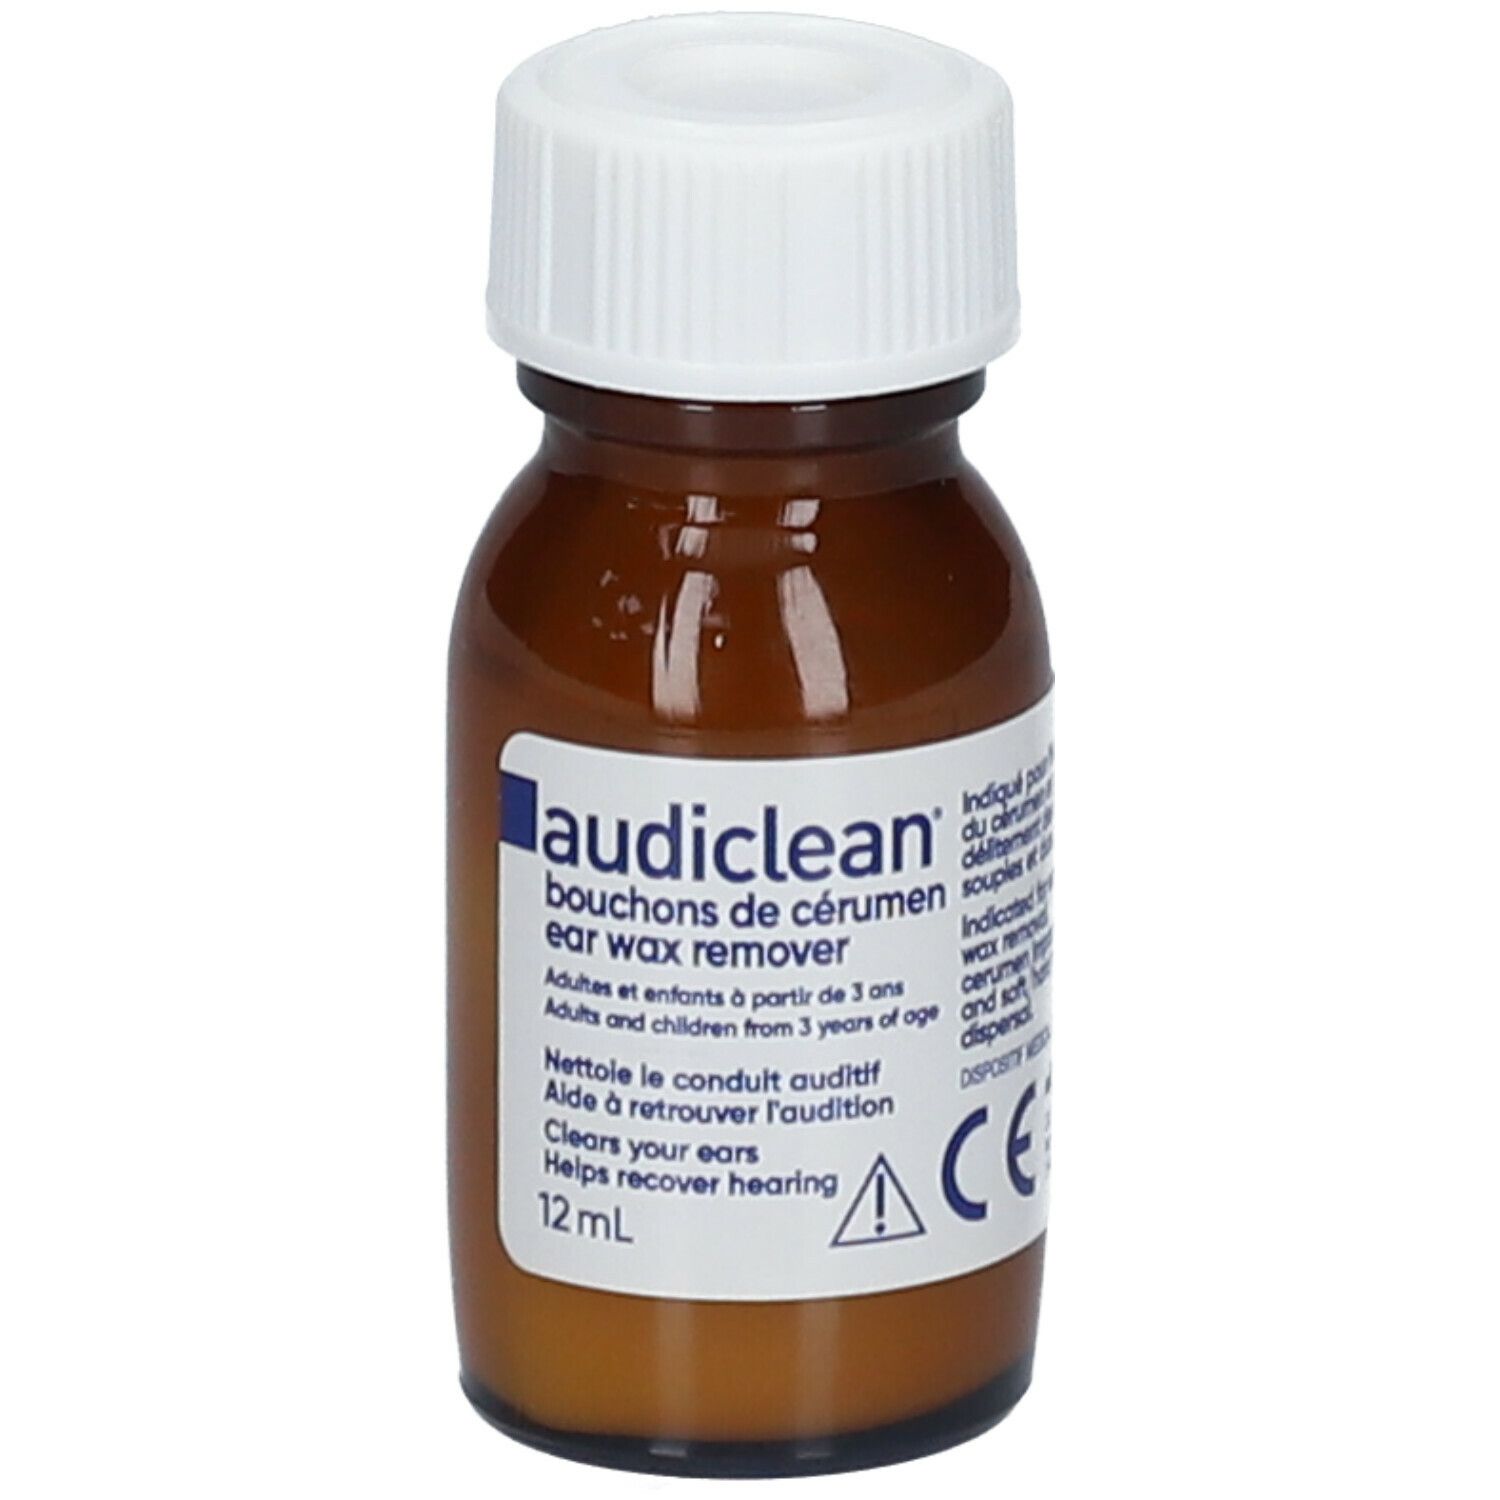 audiclean® Bouchon de cerumen 12 ml